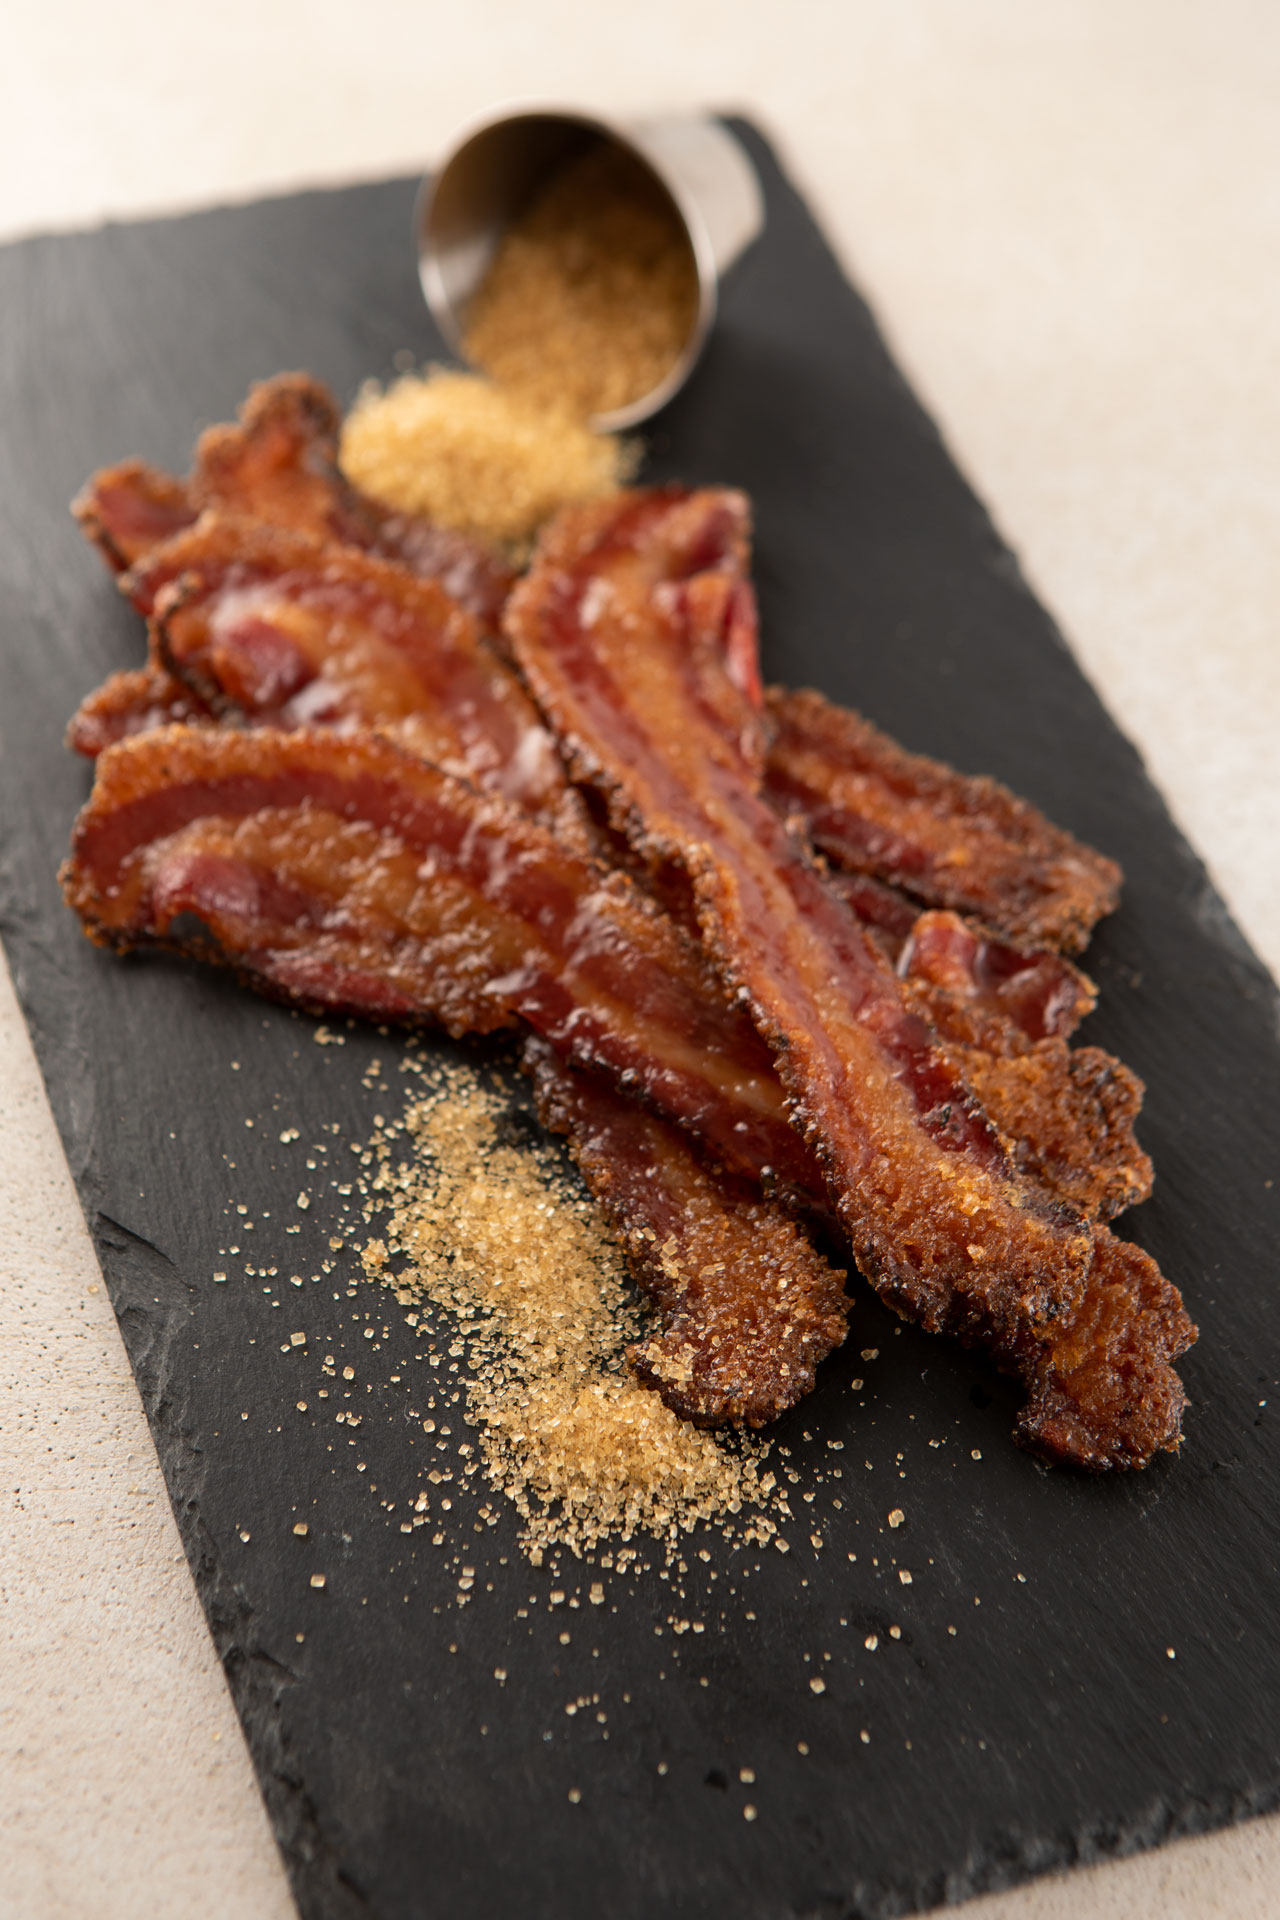 Candied bacon with turbinado sugar